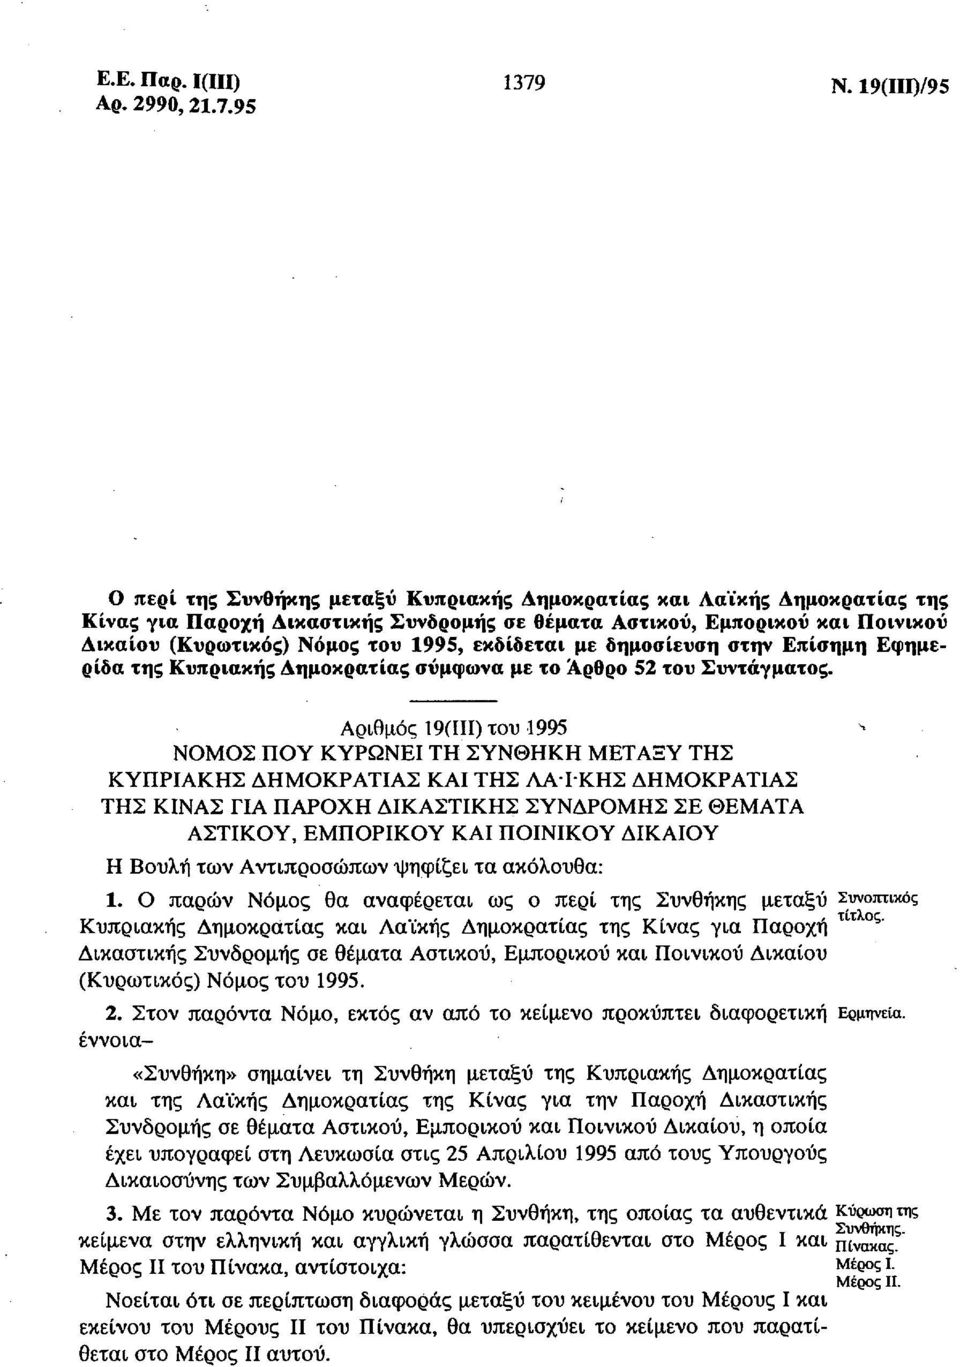 1995, εκδίδεται με δημοσίευση στην Επίσημη Εφημερίδα της Κυπριακής Δημοκρατίας σύμφωνα με το Άρθρο 52 του Συντάγματος.